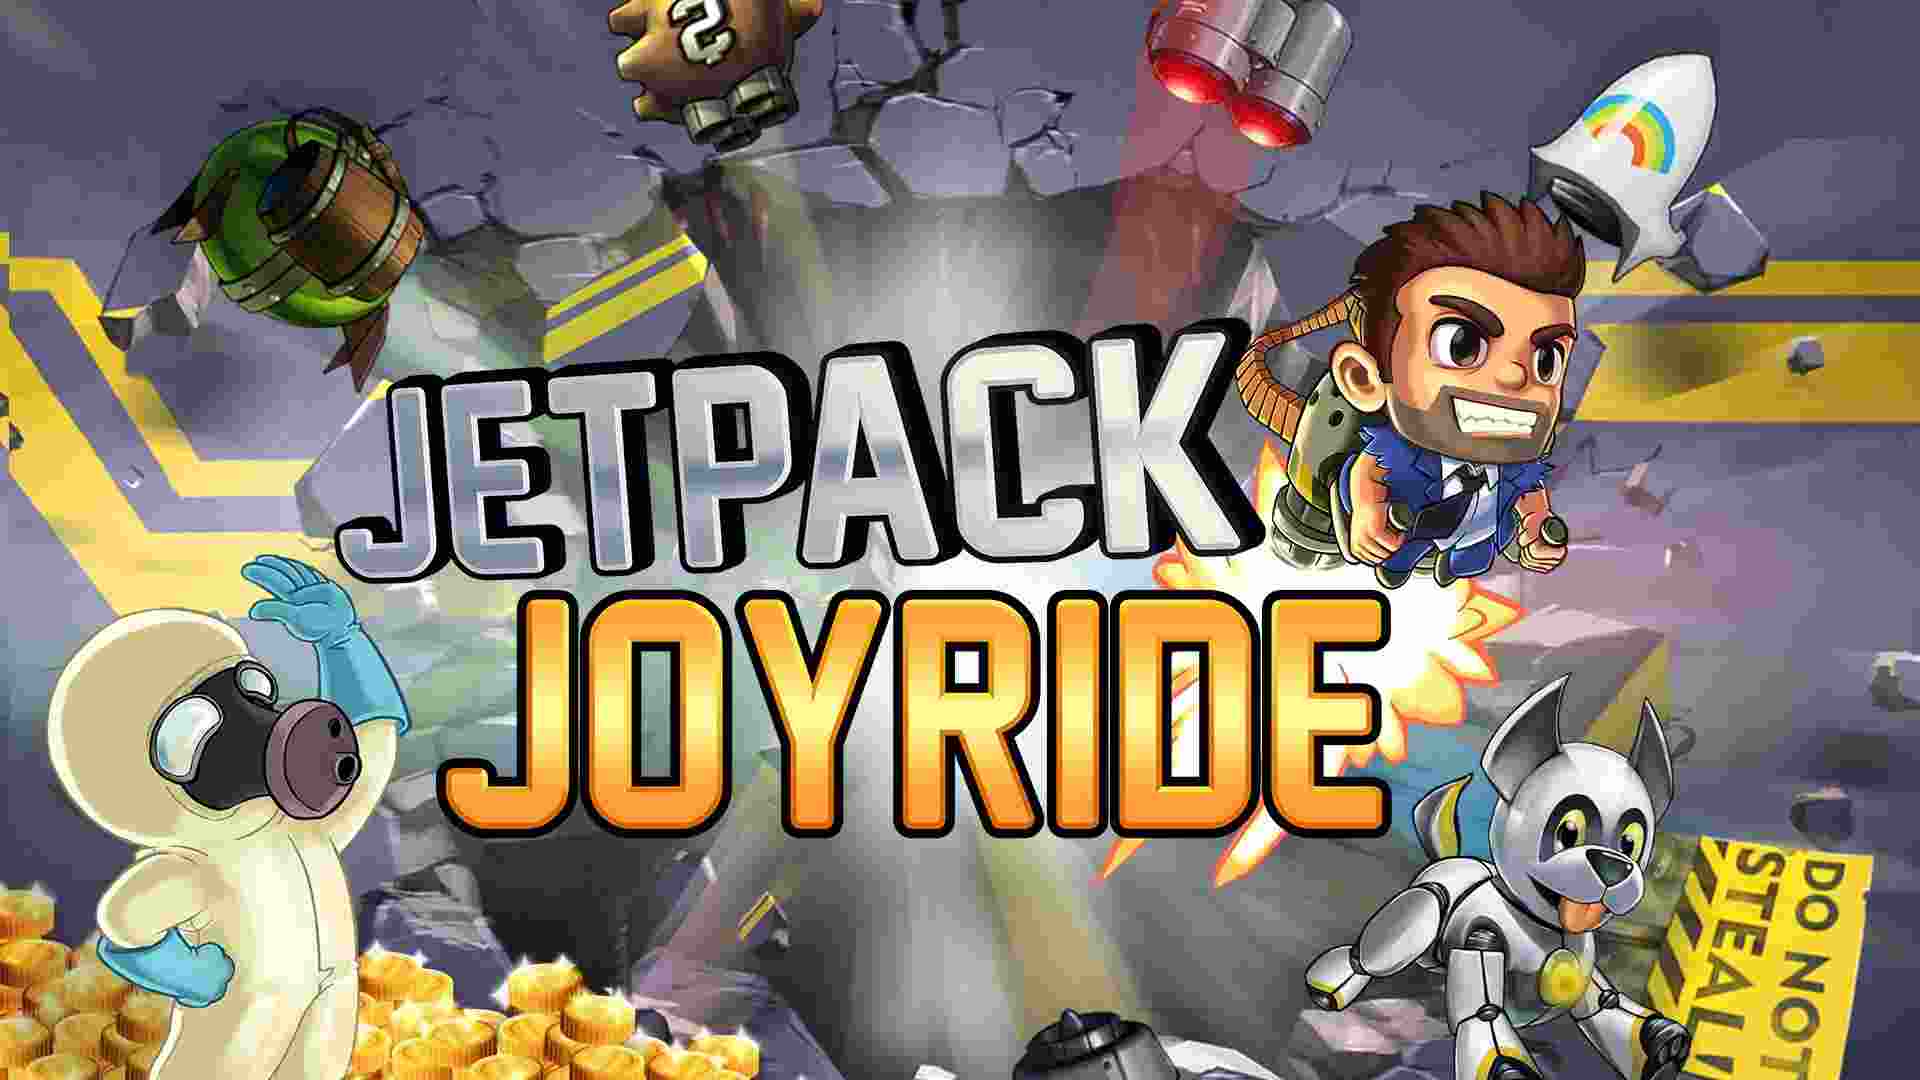 Jetpack Joyride 1.93.2 MOD Menu VIP, Không Chết, Rất Nhiều Tiền, Mở khóa tất cả APK